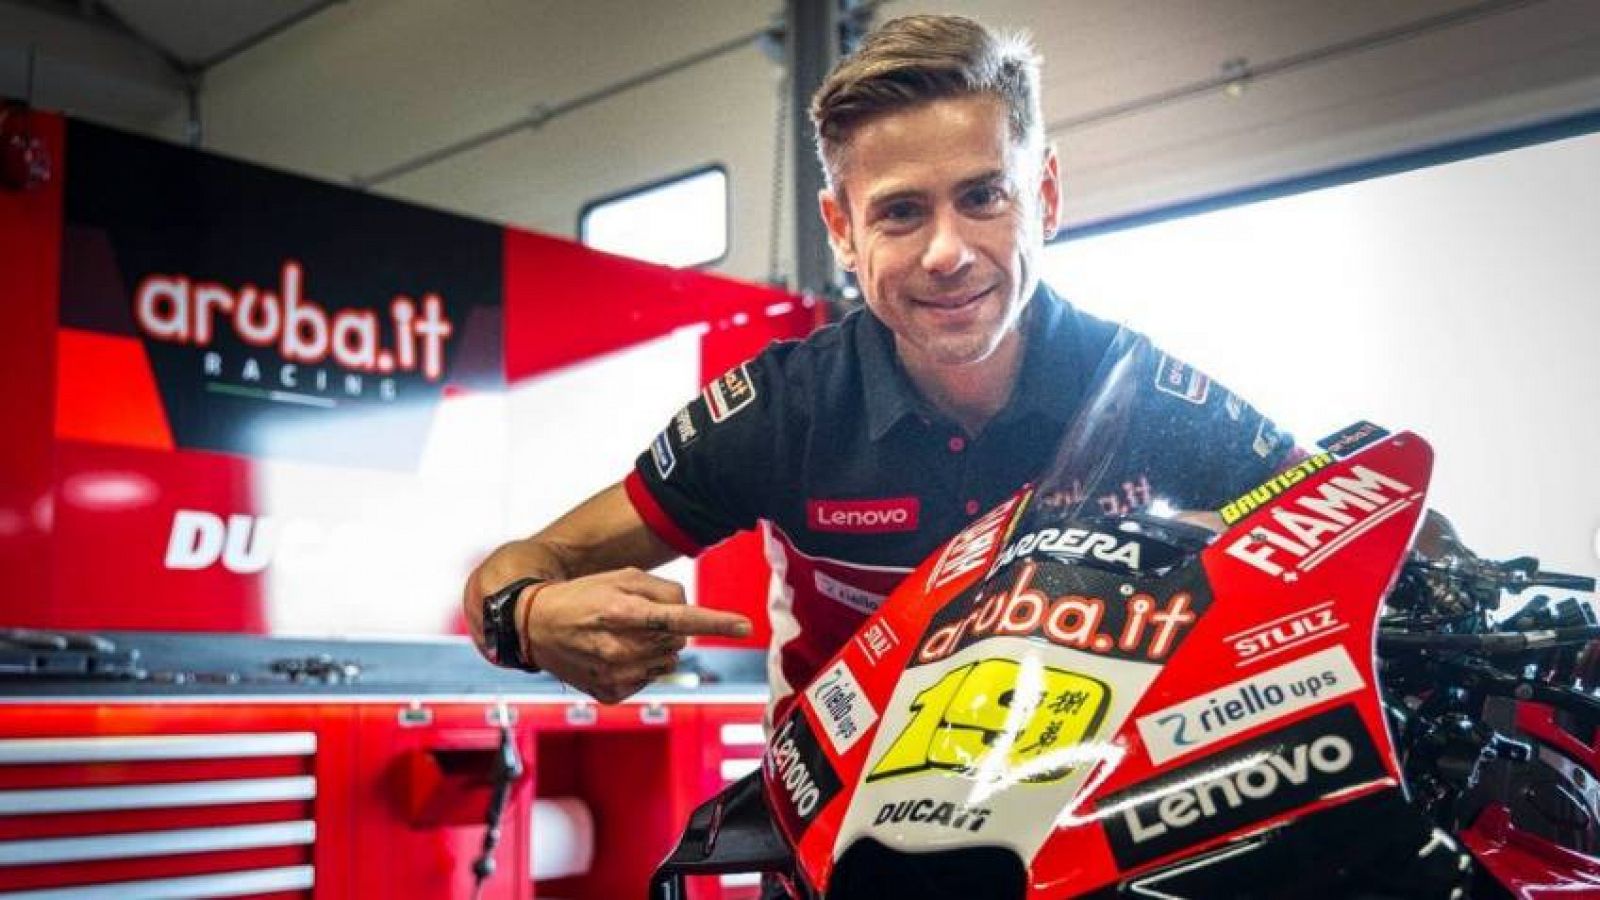 Álvaro Bautista reaparece en MotoGP cinco años después